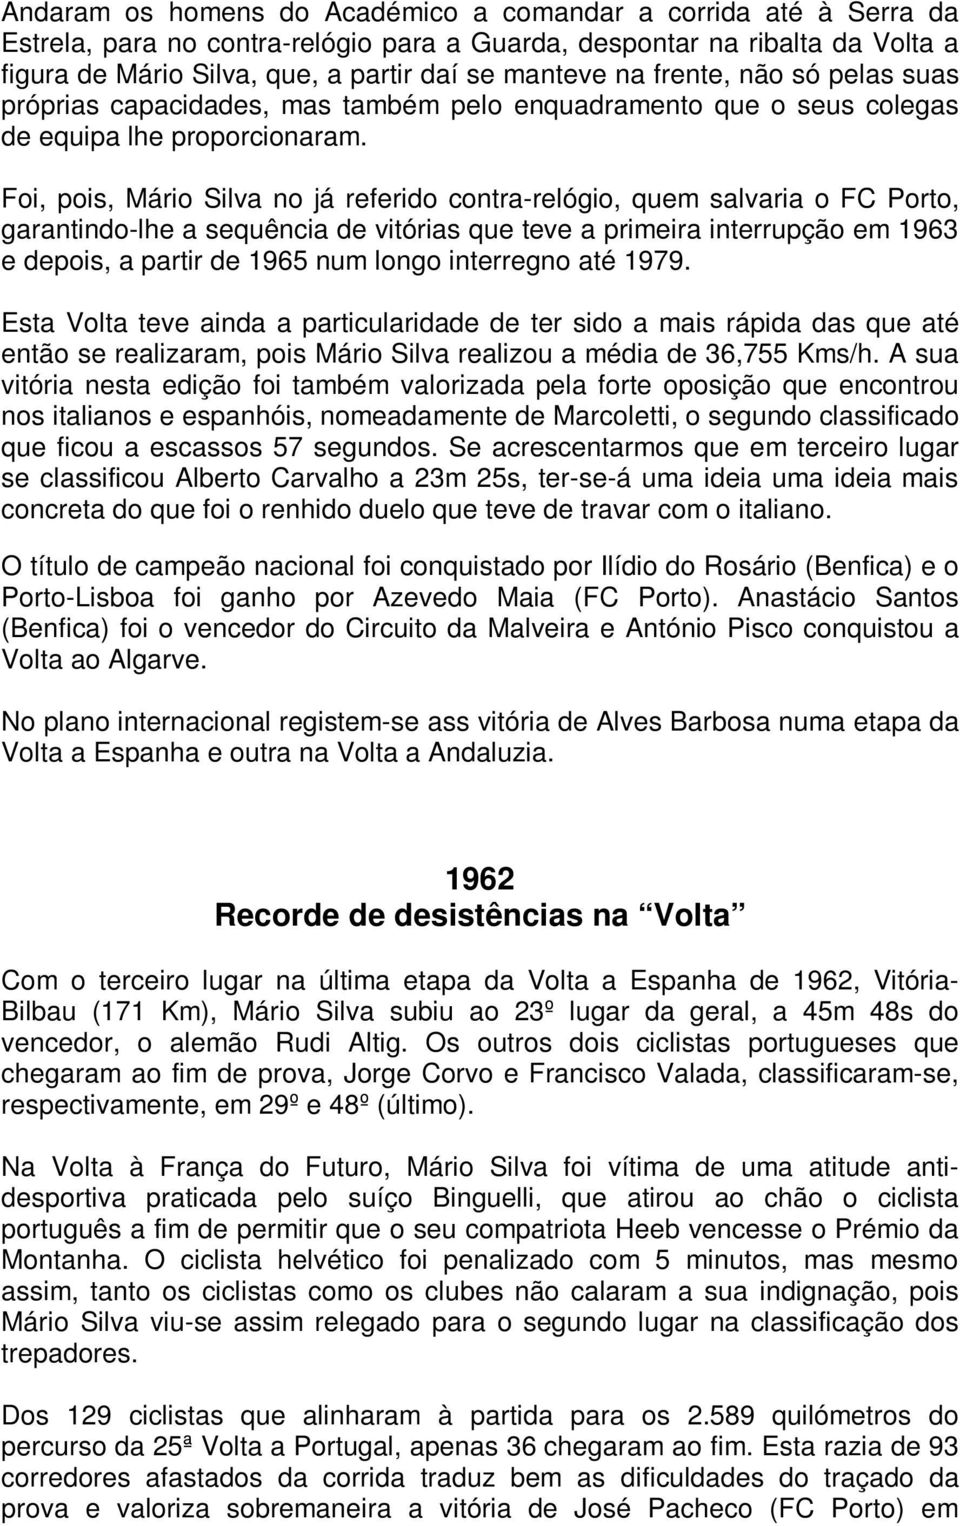 Foi, pois, Mário Silva no já referido contra-relógio, quem salvaria o FC Porto, garantindo-lhe a sequência de vitórias que teve a primeira interrupção em 1963 e depois, a partir de 1965 num longo